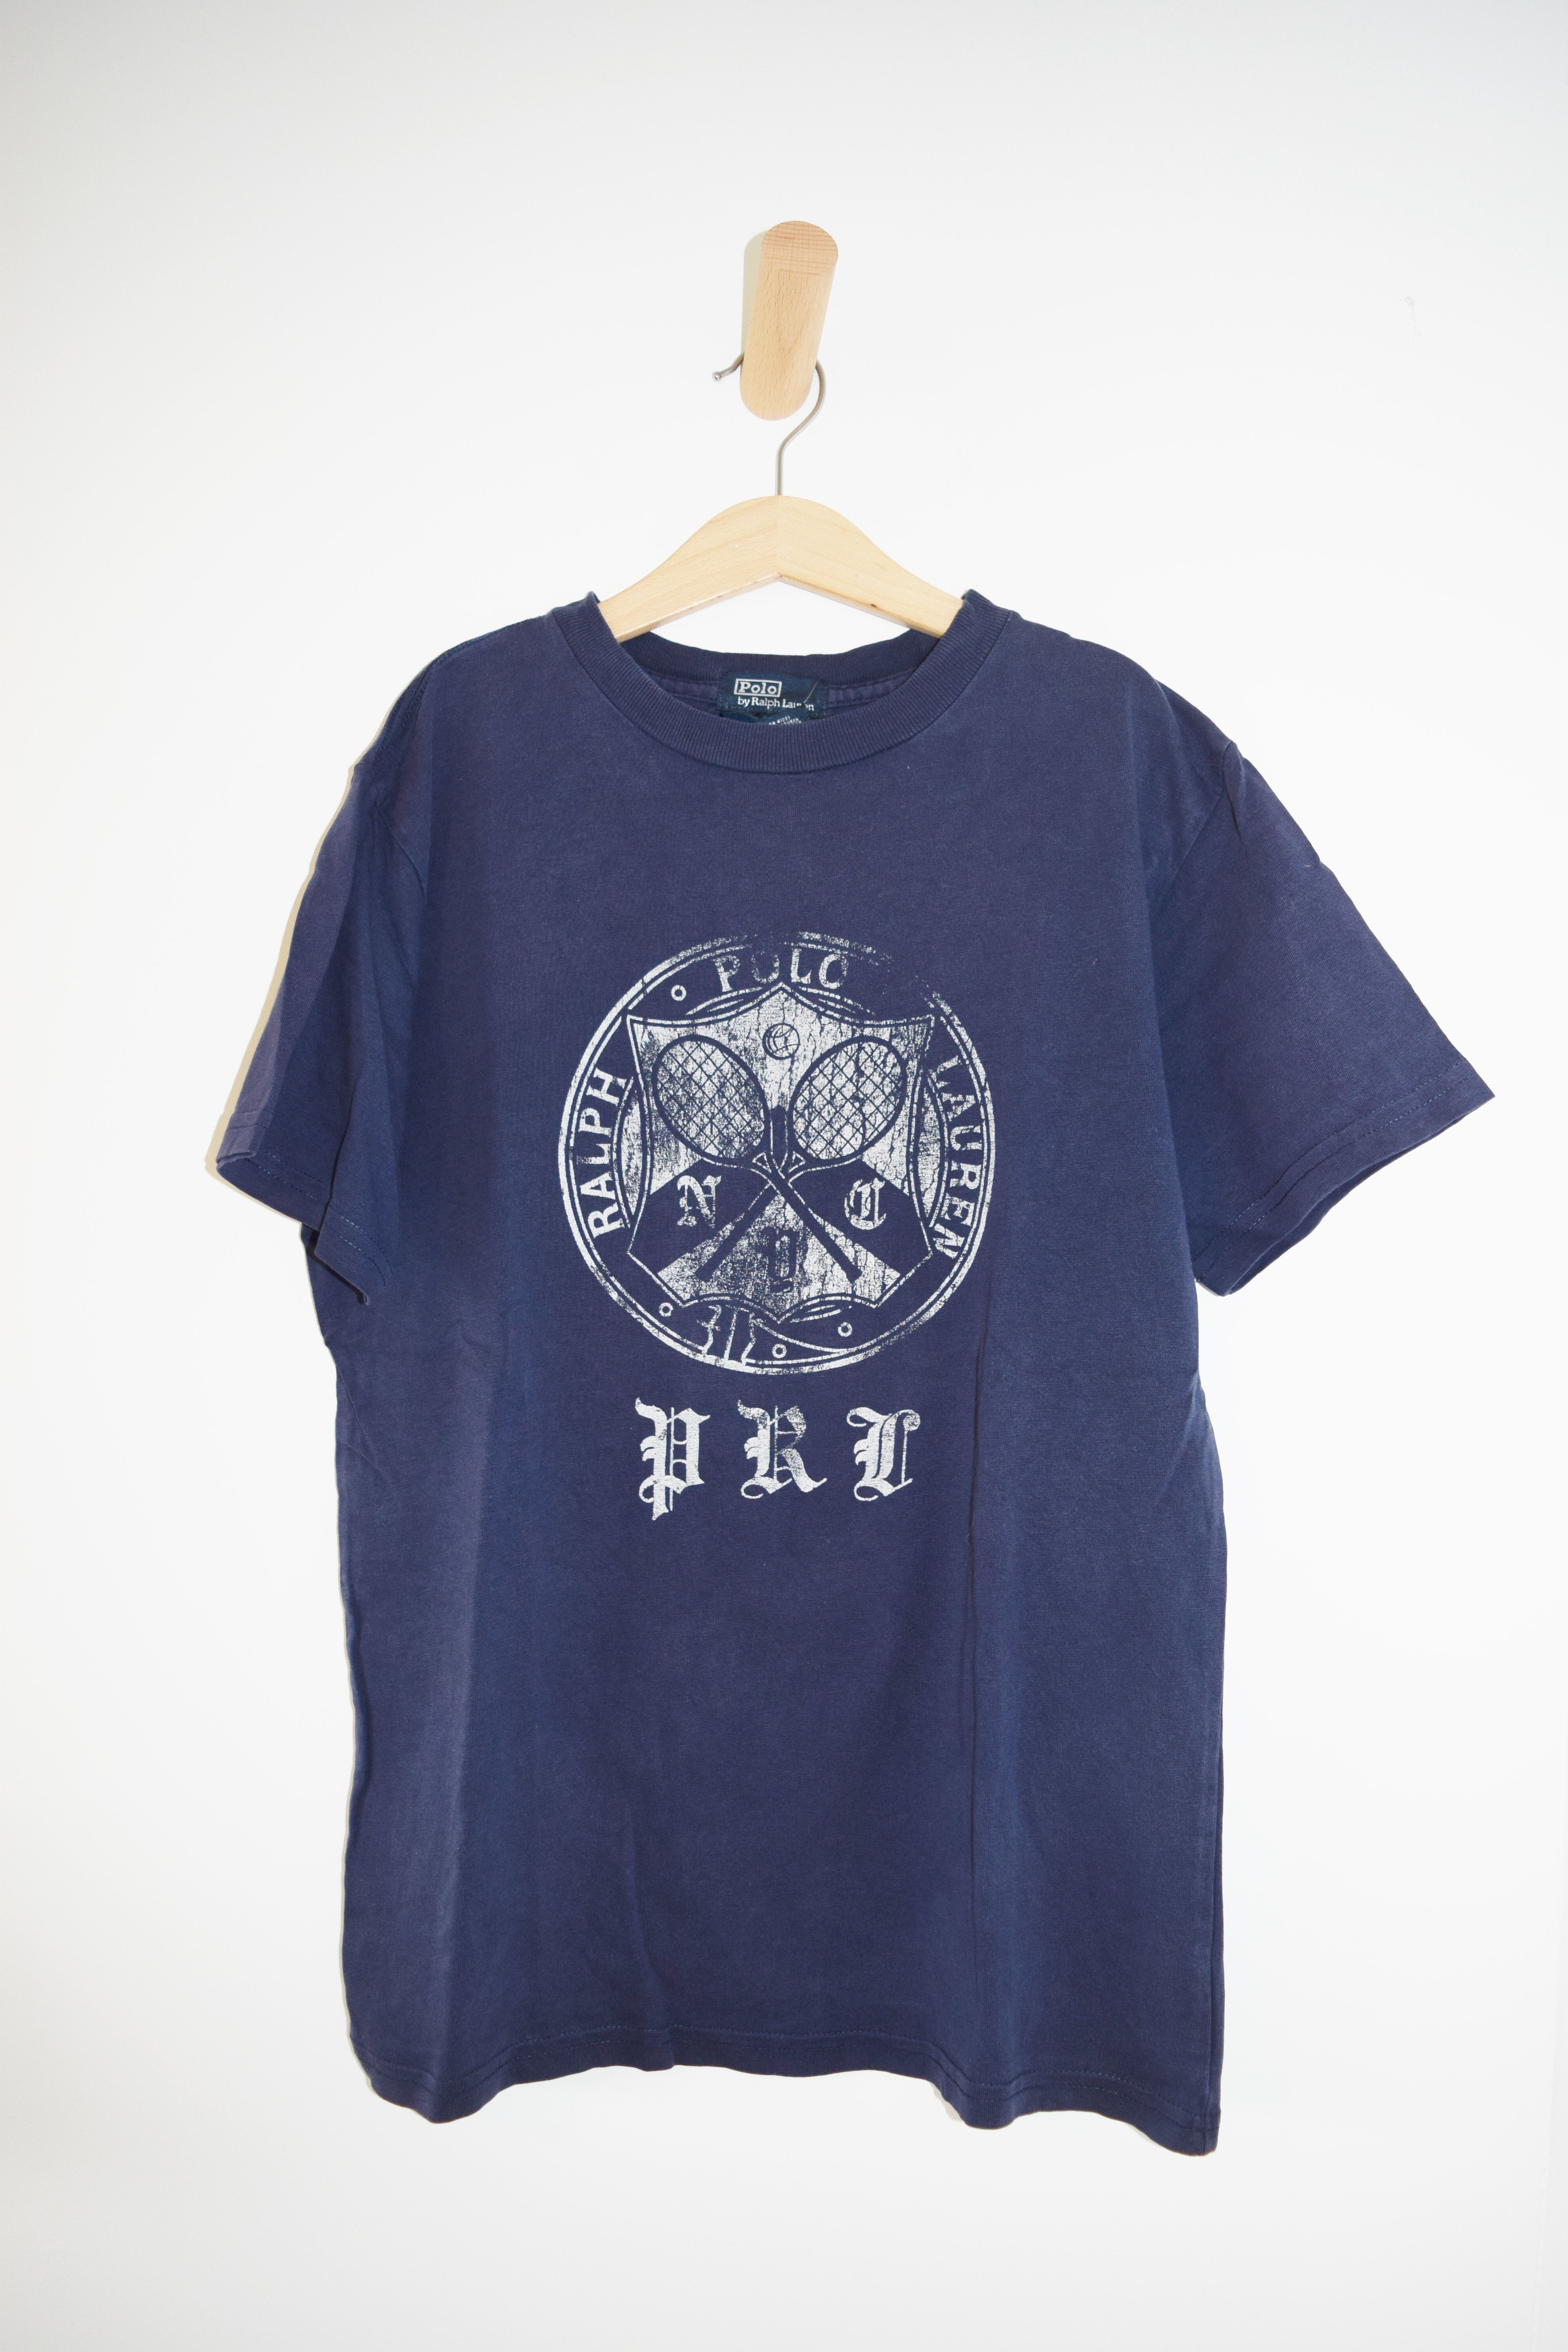 T-shirt, Ralph Lauren, 12 jaar 